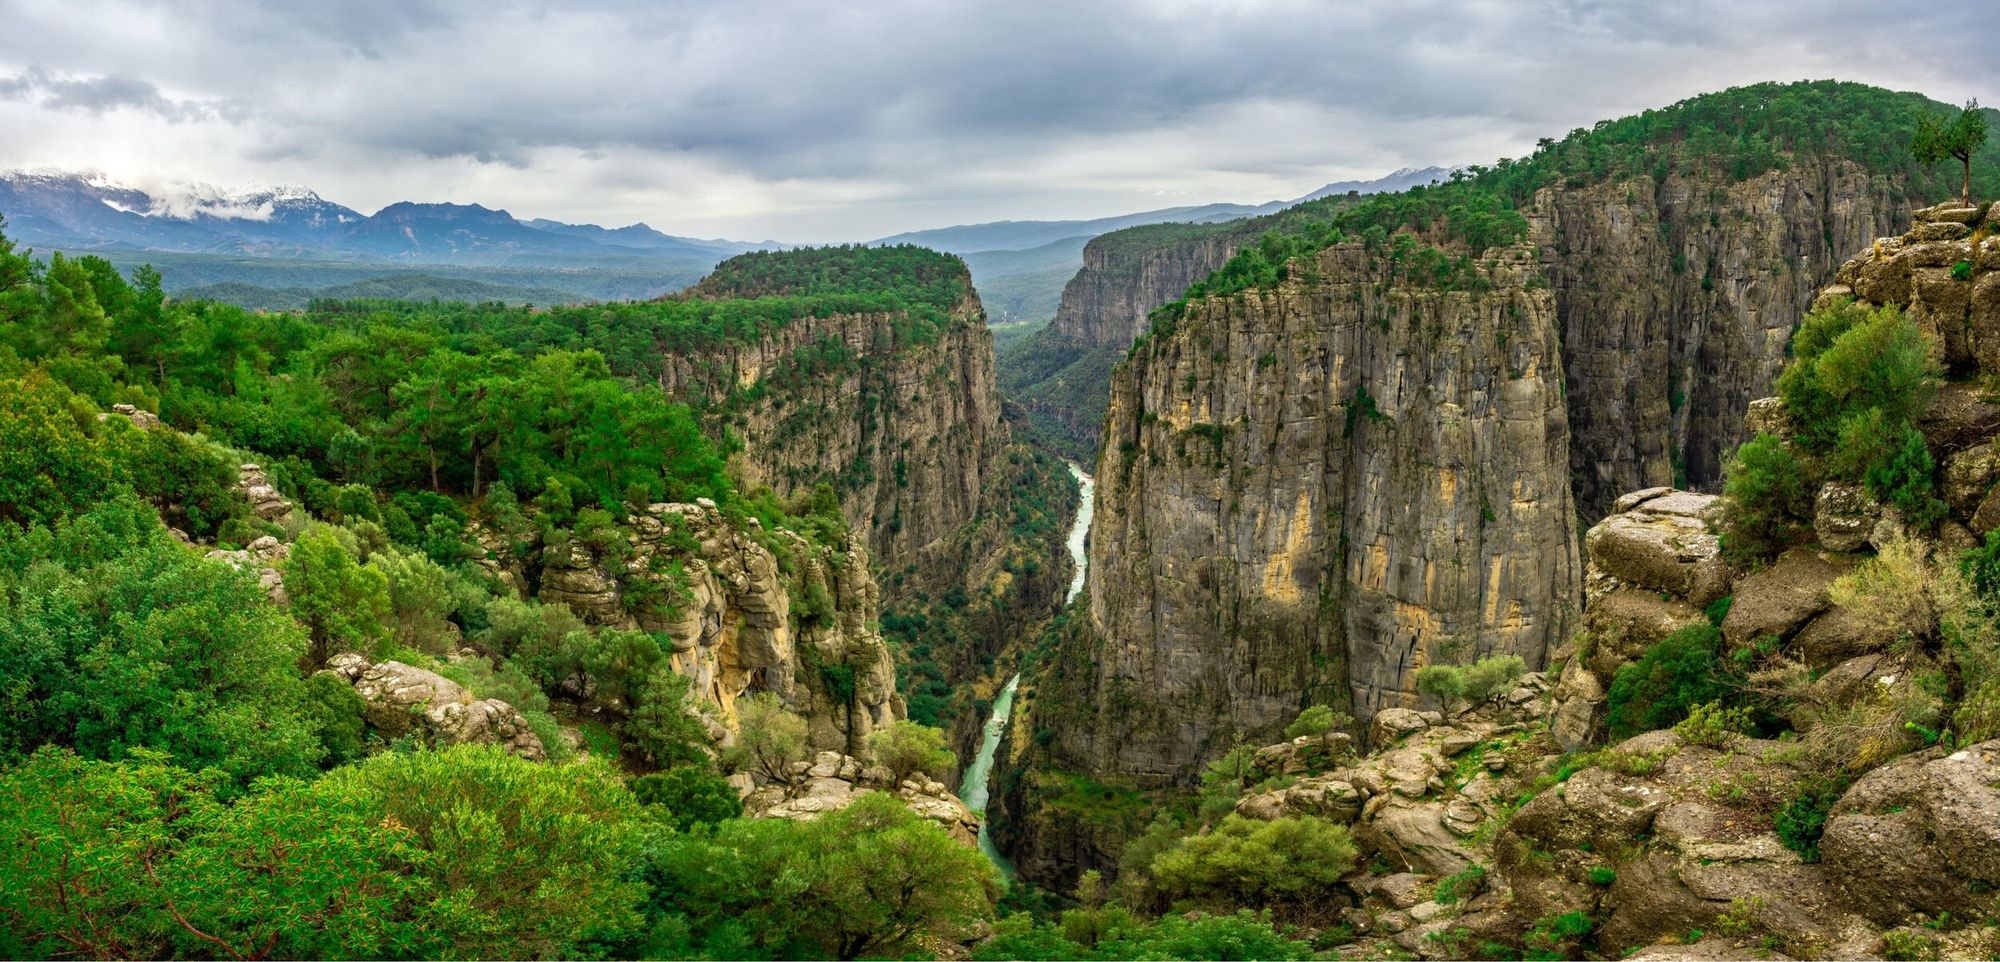 Tazı Canyon, Antalya, Turkey (Photo by Sutterstock)